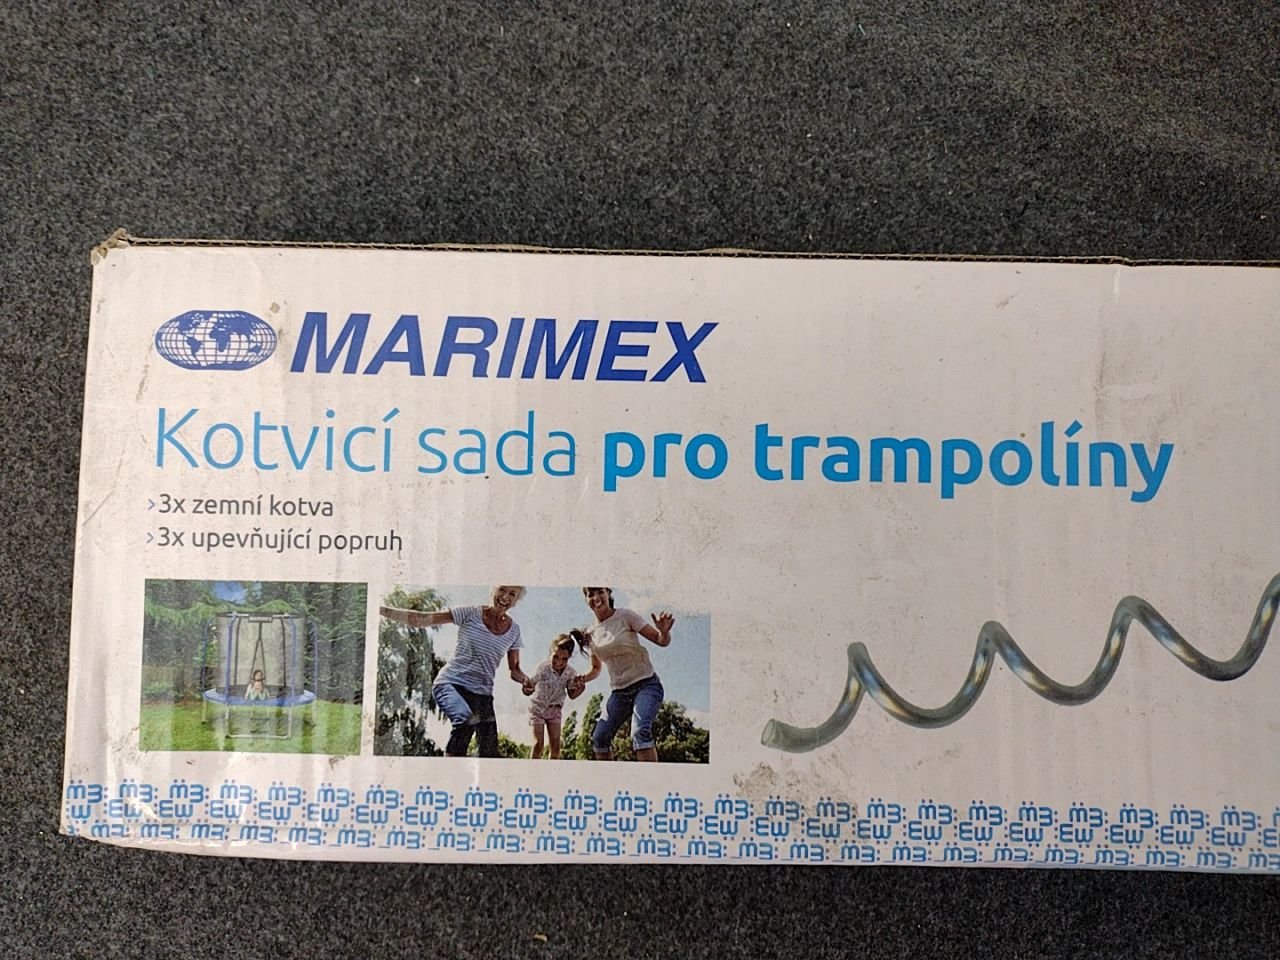 Kotvící sada pro trampolíny - kotvy, popruhy Marimex chybí 1 popruh